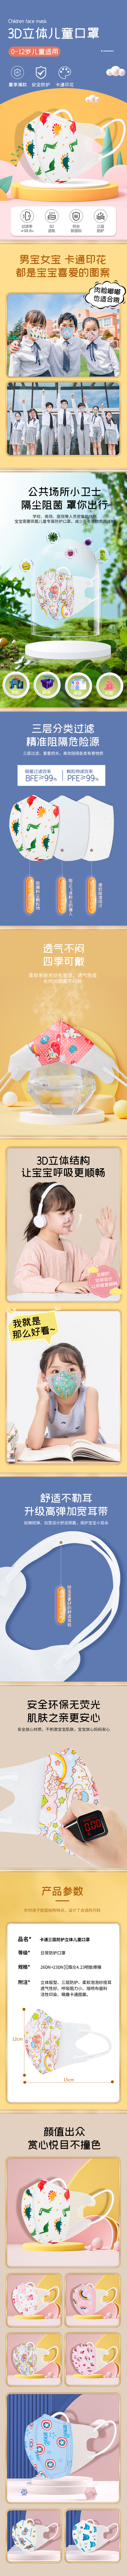 淘宝美工xu徐斌儿童口罩一次性用品 防护口罩作品